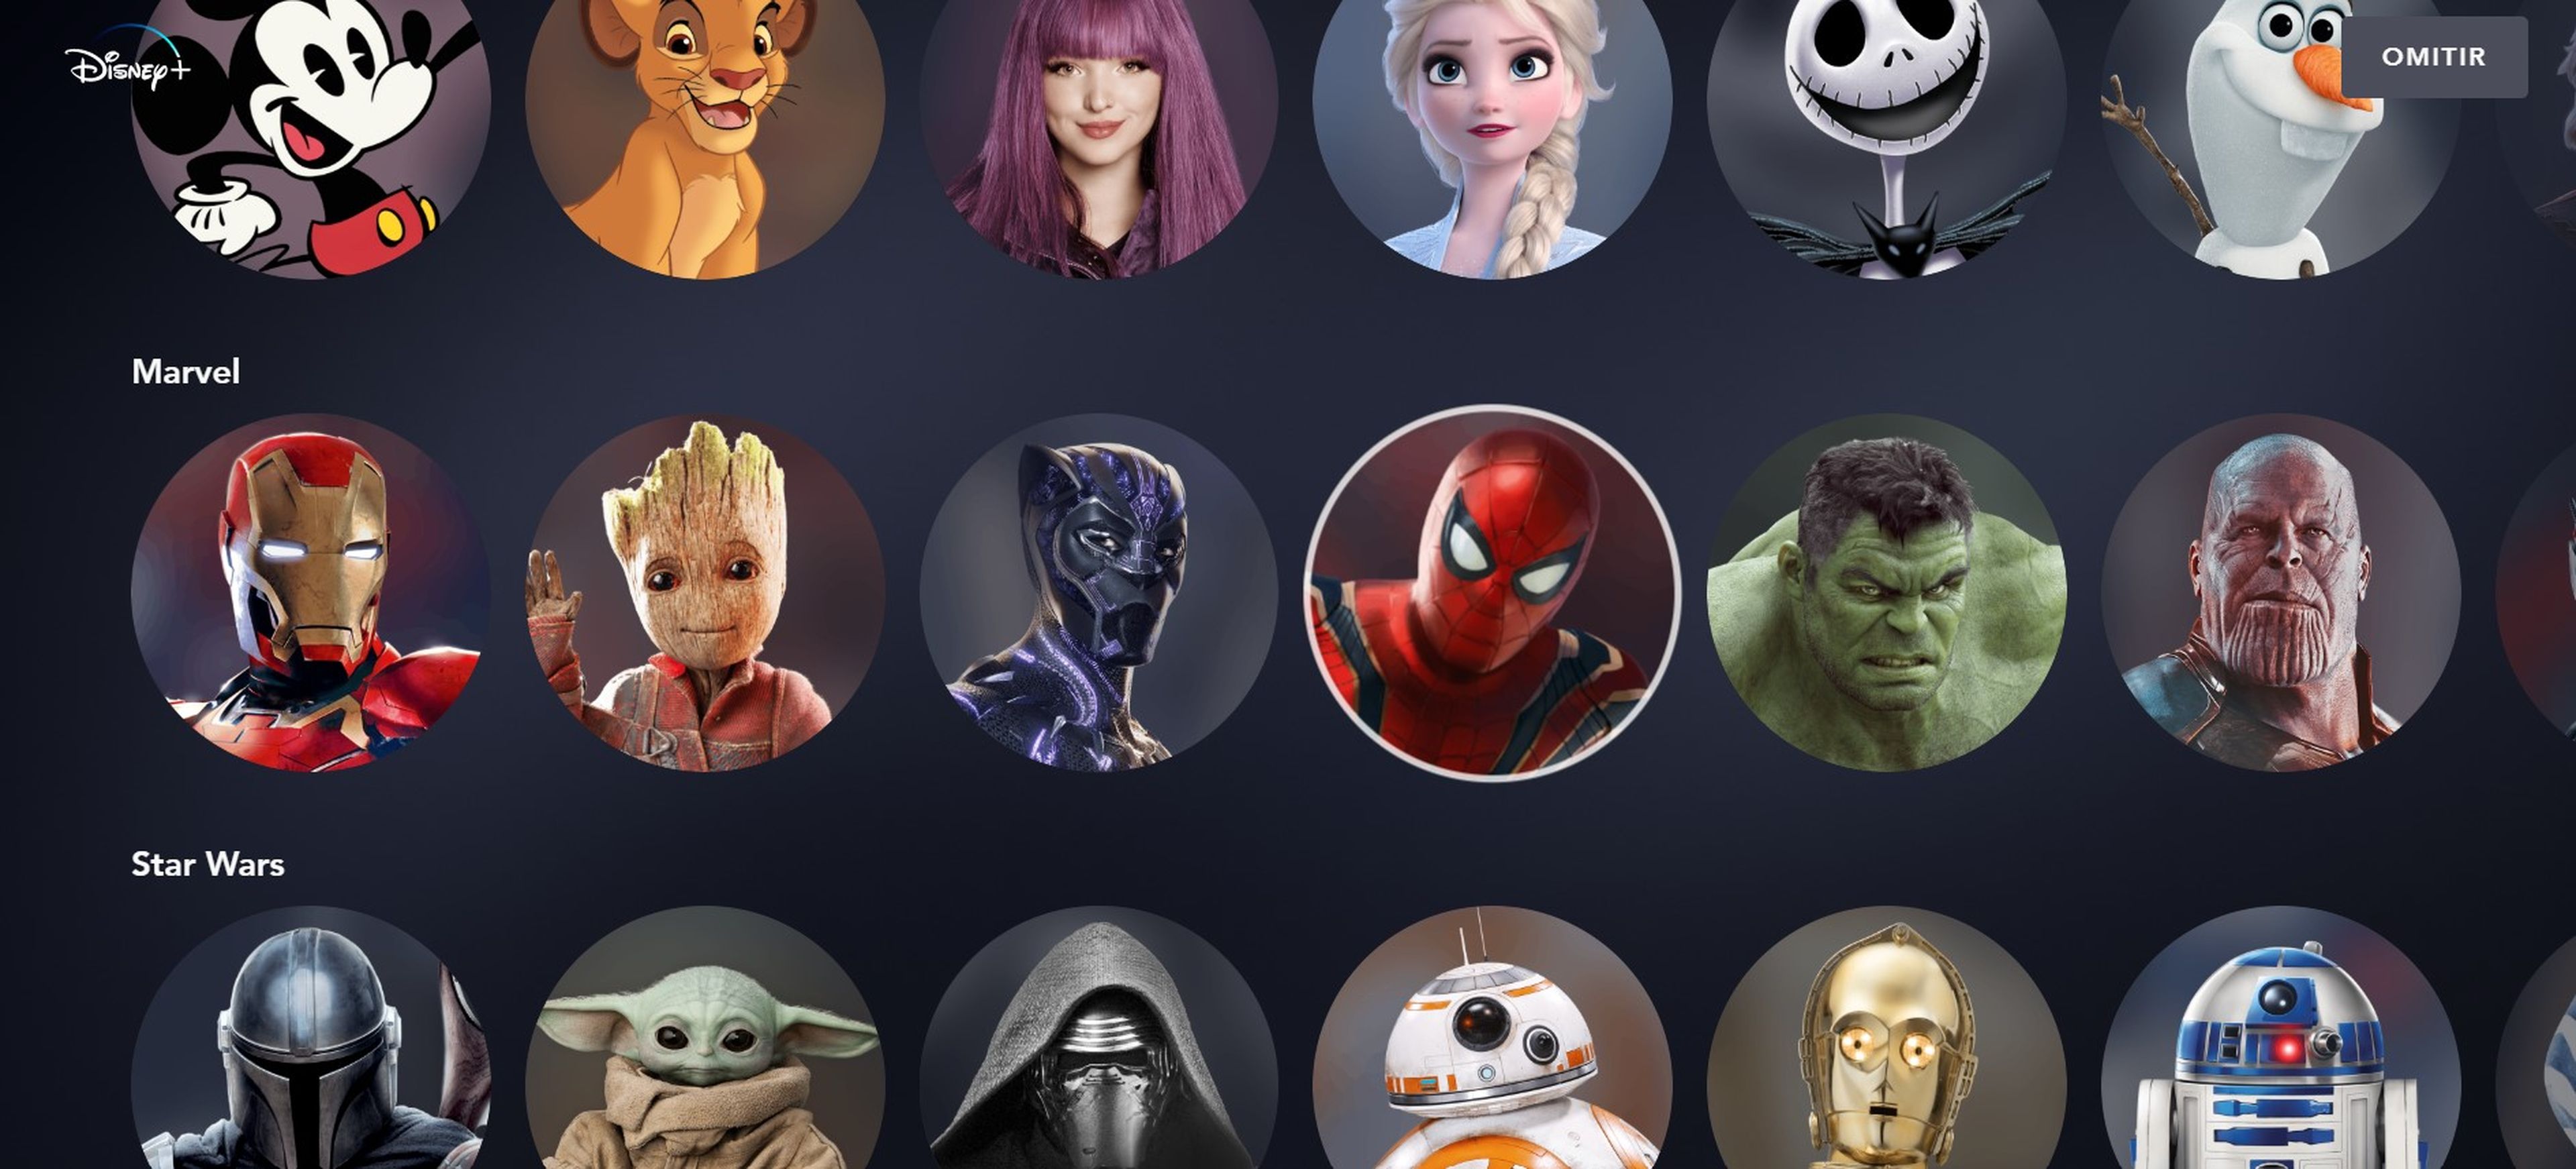 Cómo añadir más perfiles en Disney Plus